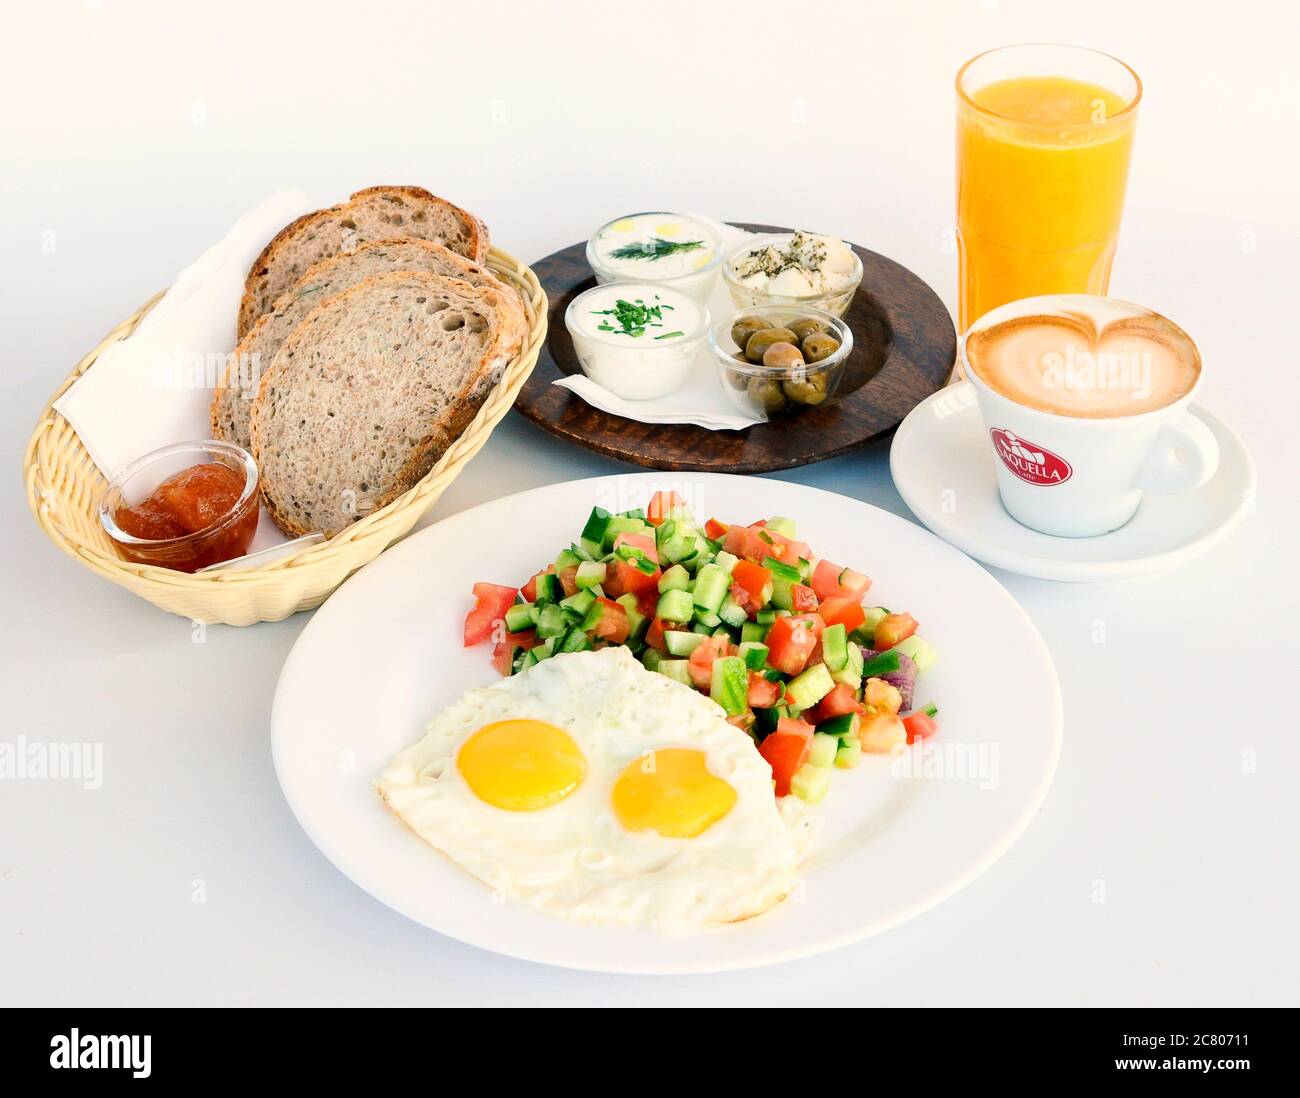 Israelisches Frühstück mit zwei Spiegeleiern, Salat, Brot, Butter, Käse, Orangensaft und Kaffee Stockfoto